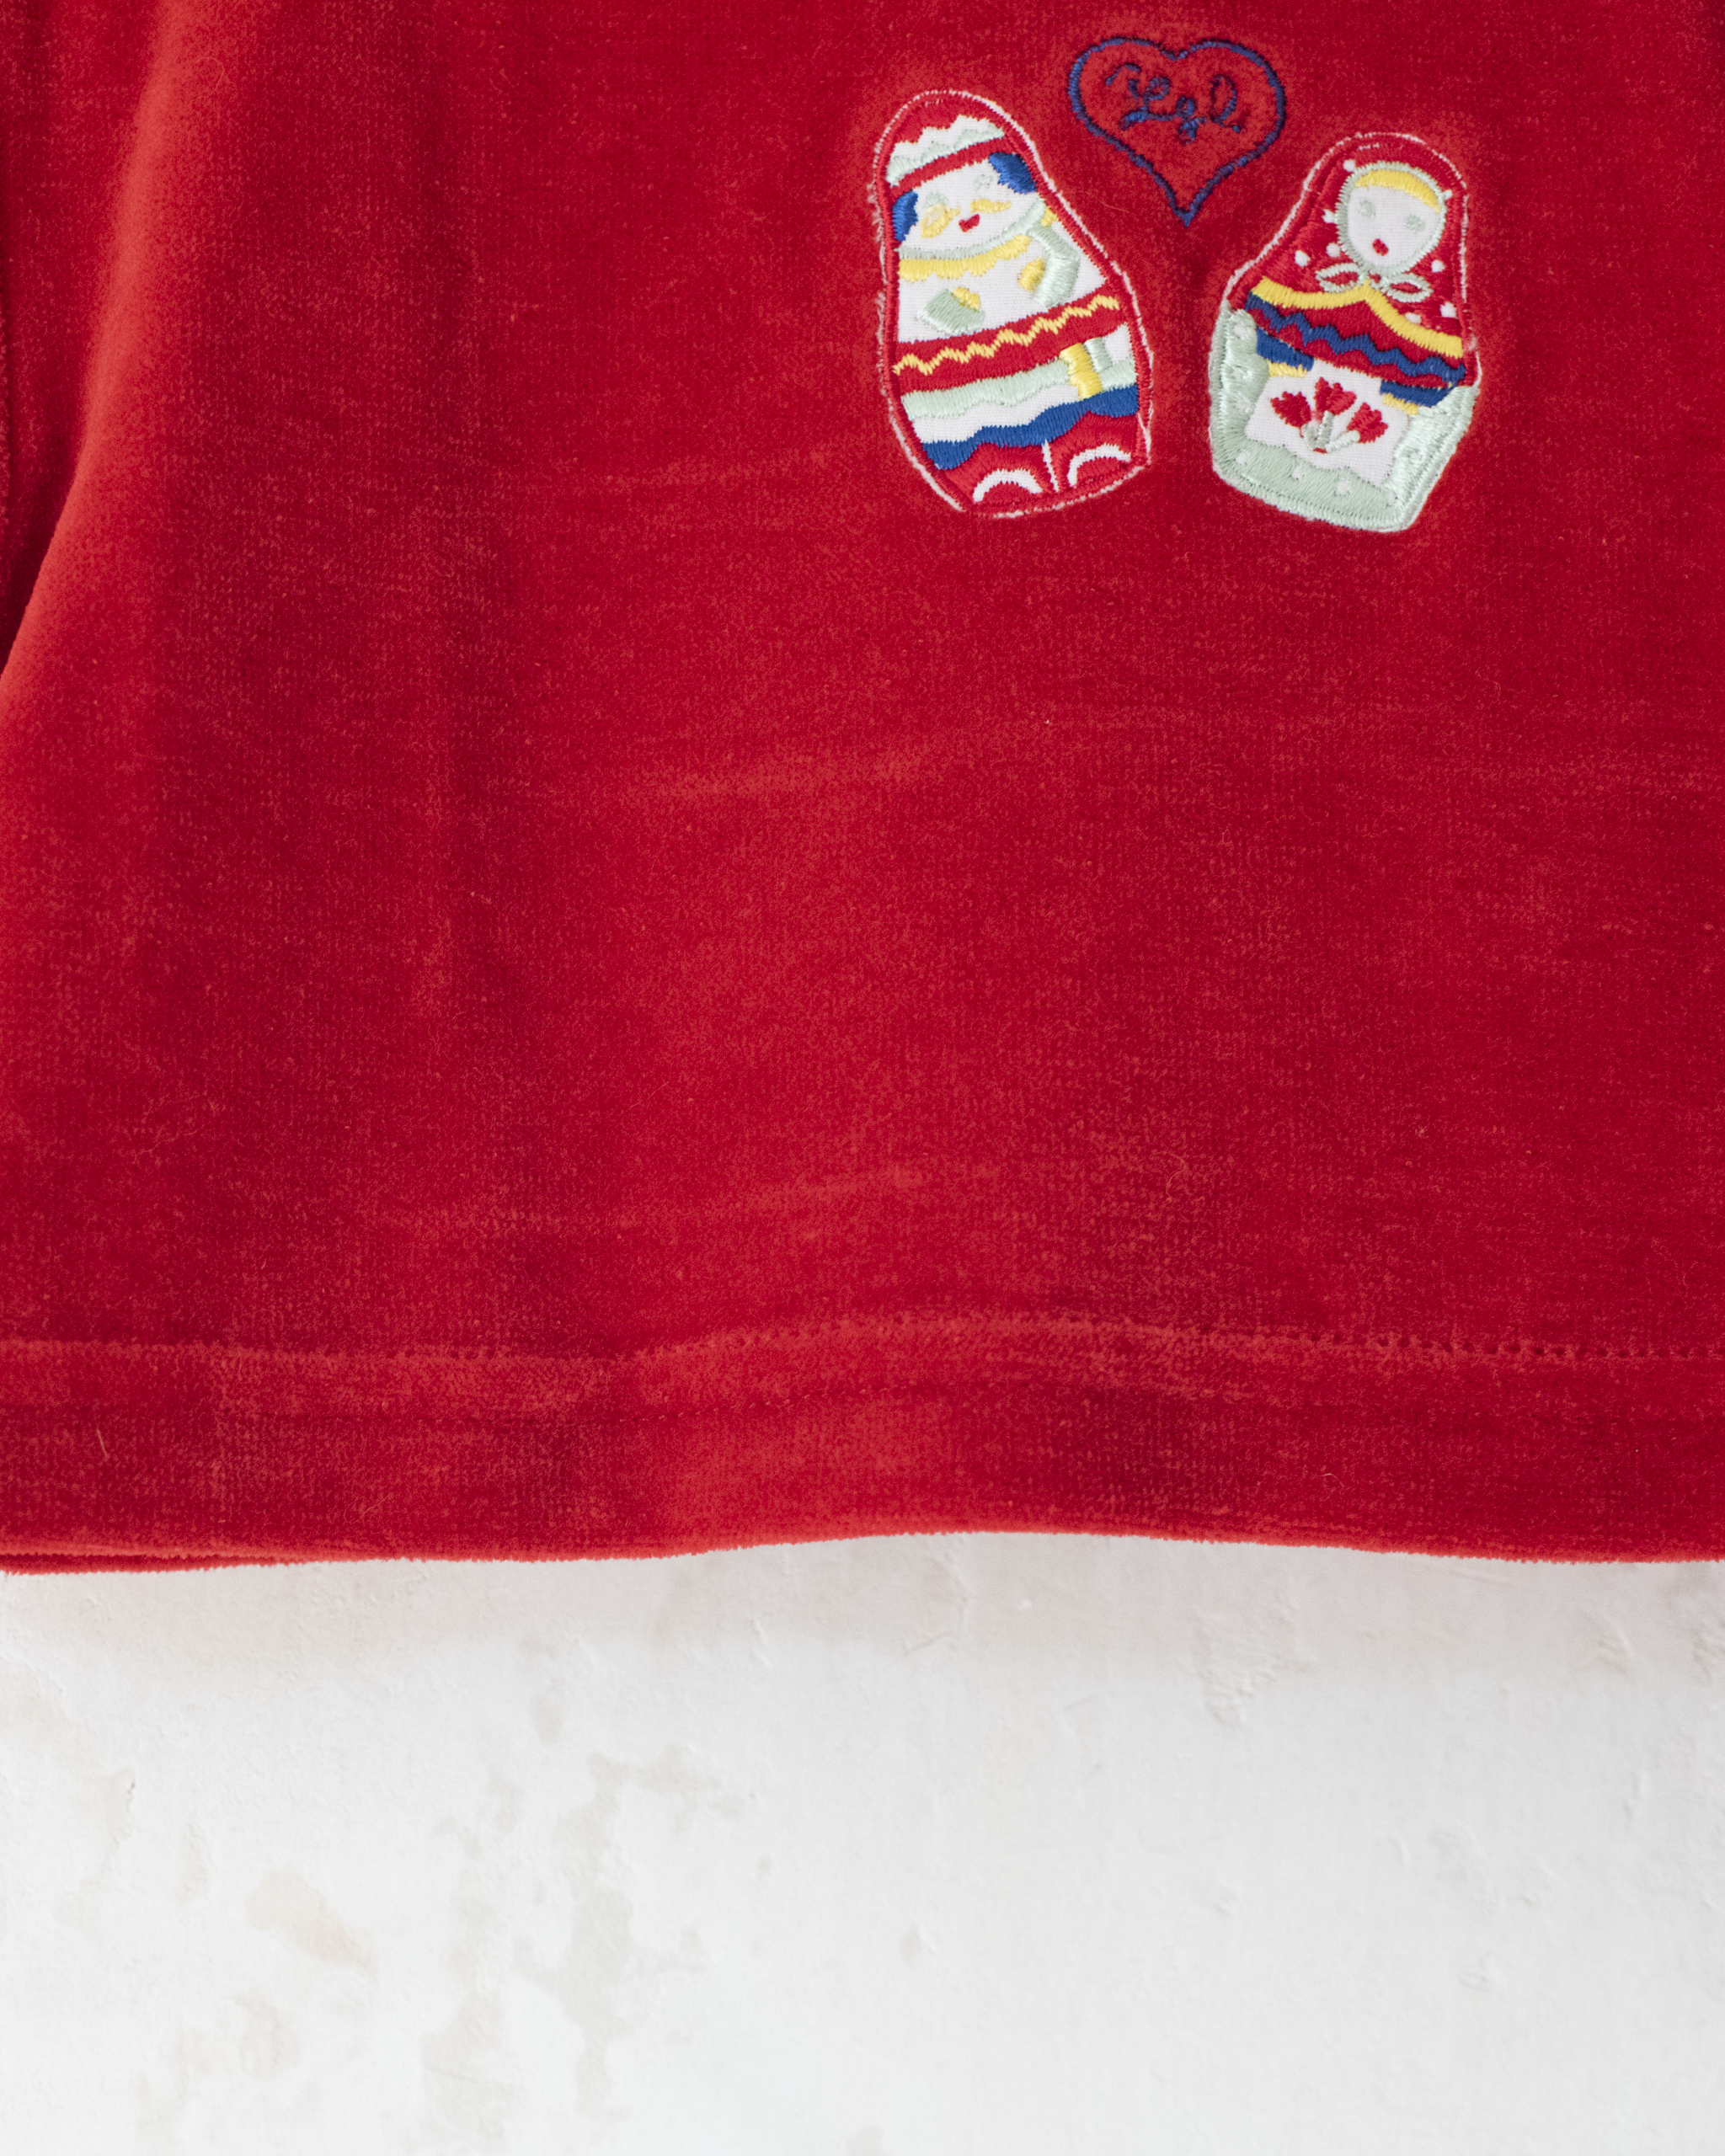 חולצת קטיפה אדומה עם בבושקות מבית איב סאן לורן | 3-6 חודשים